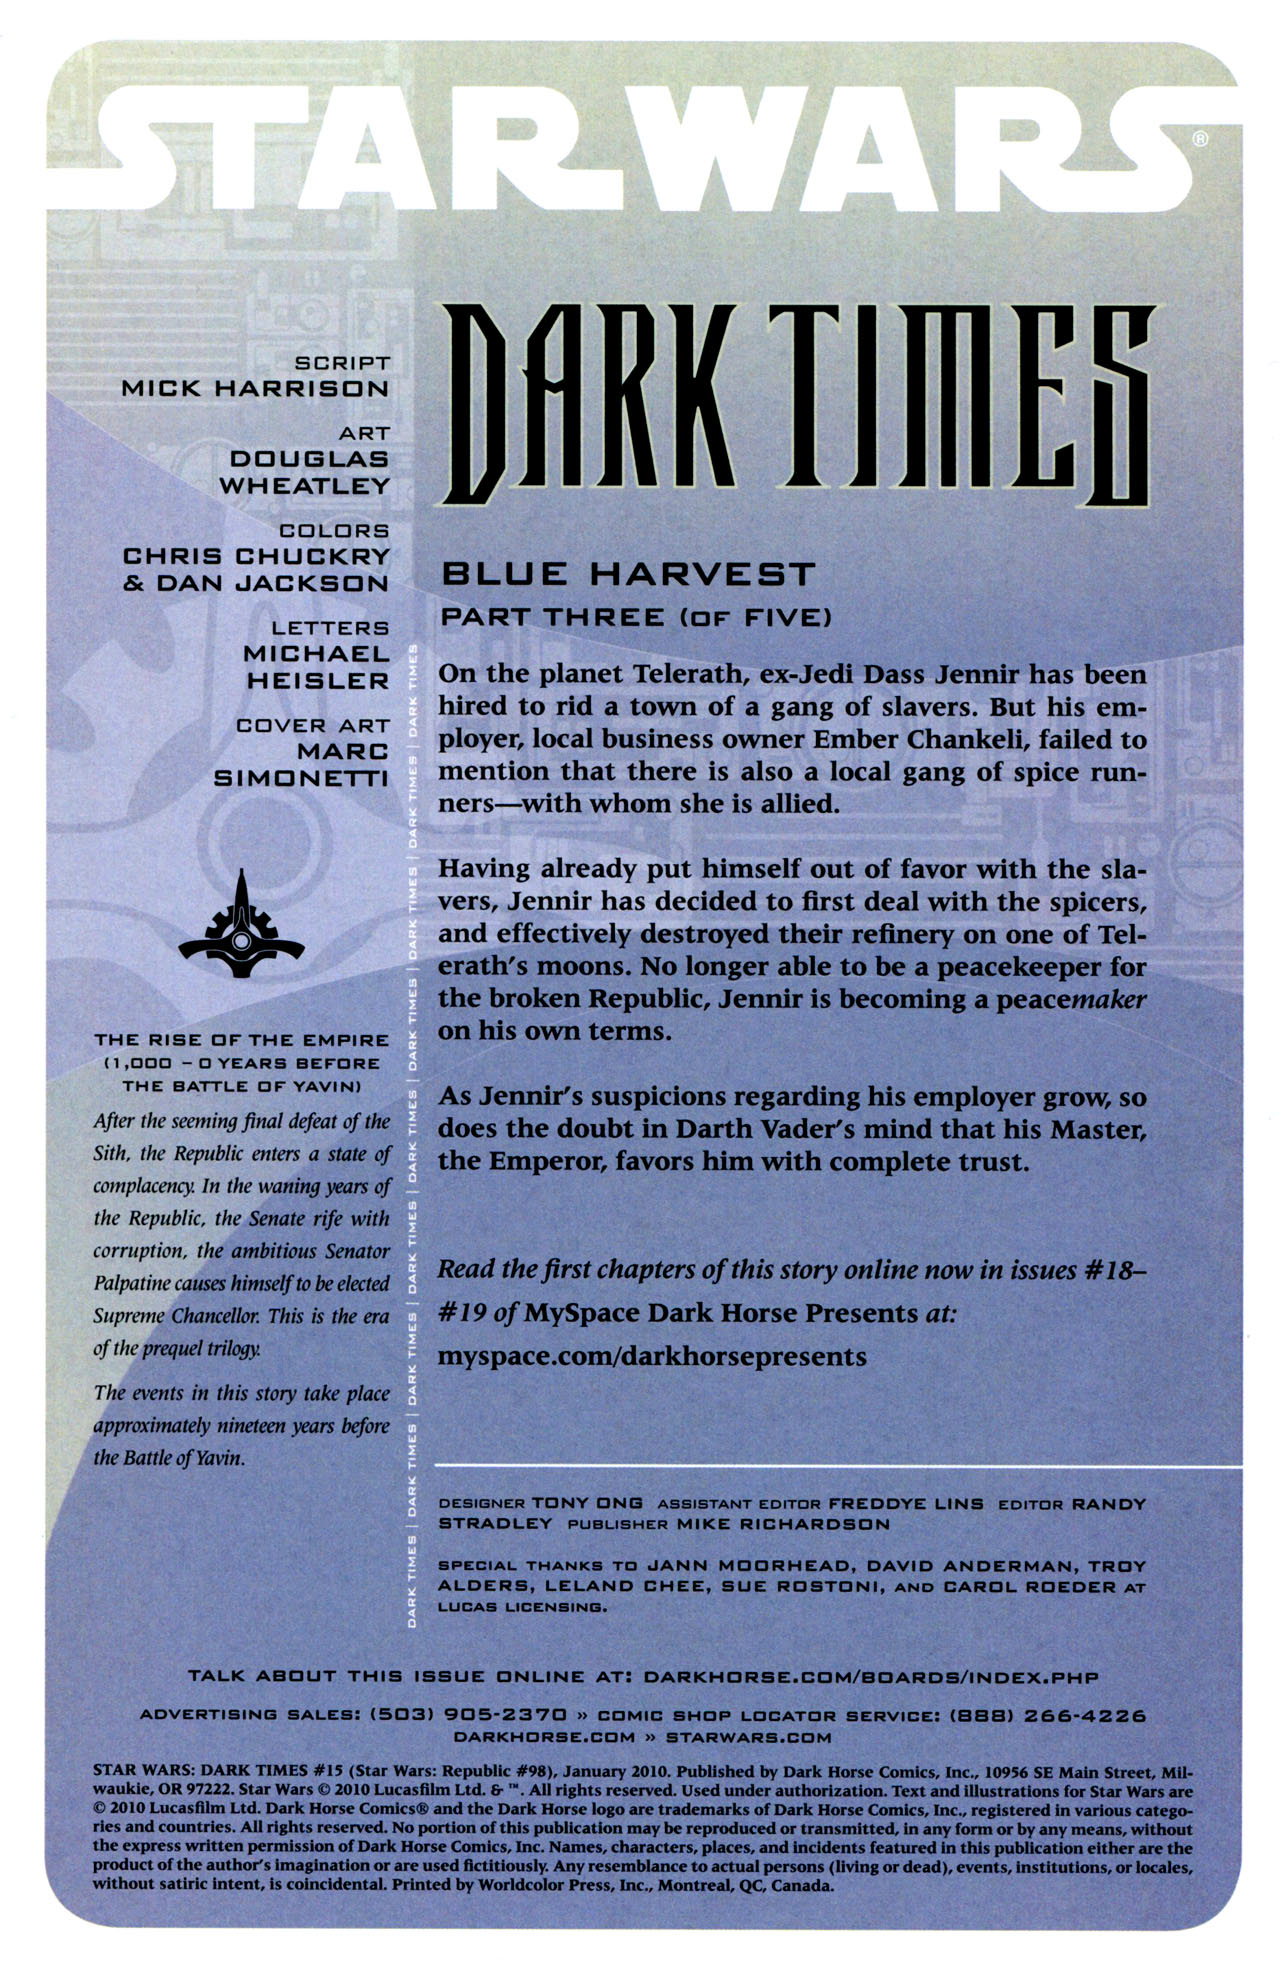 Read online Star Wars: Dark Times comic -  Issue #15 - Blue Harvest, Part 3 - 2